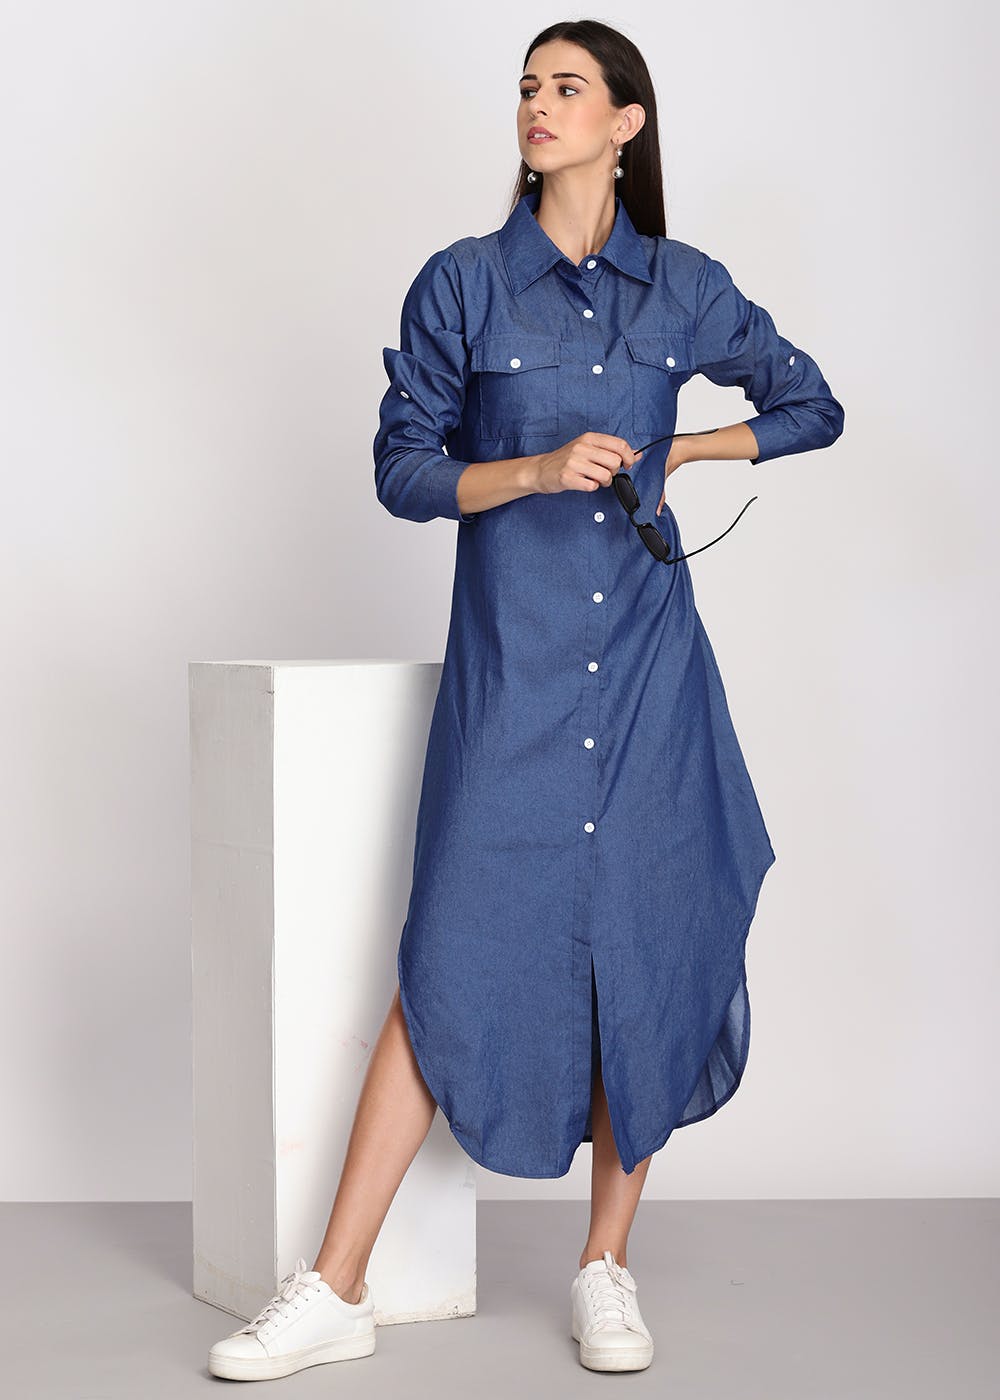 Get Long Denim Blue Shirt Dress at ₹ 1049 | LBB Shop